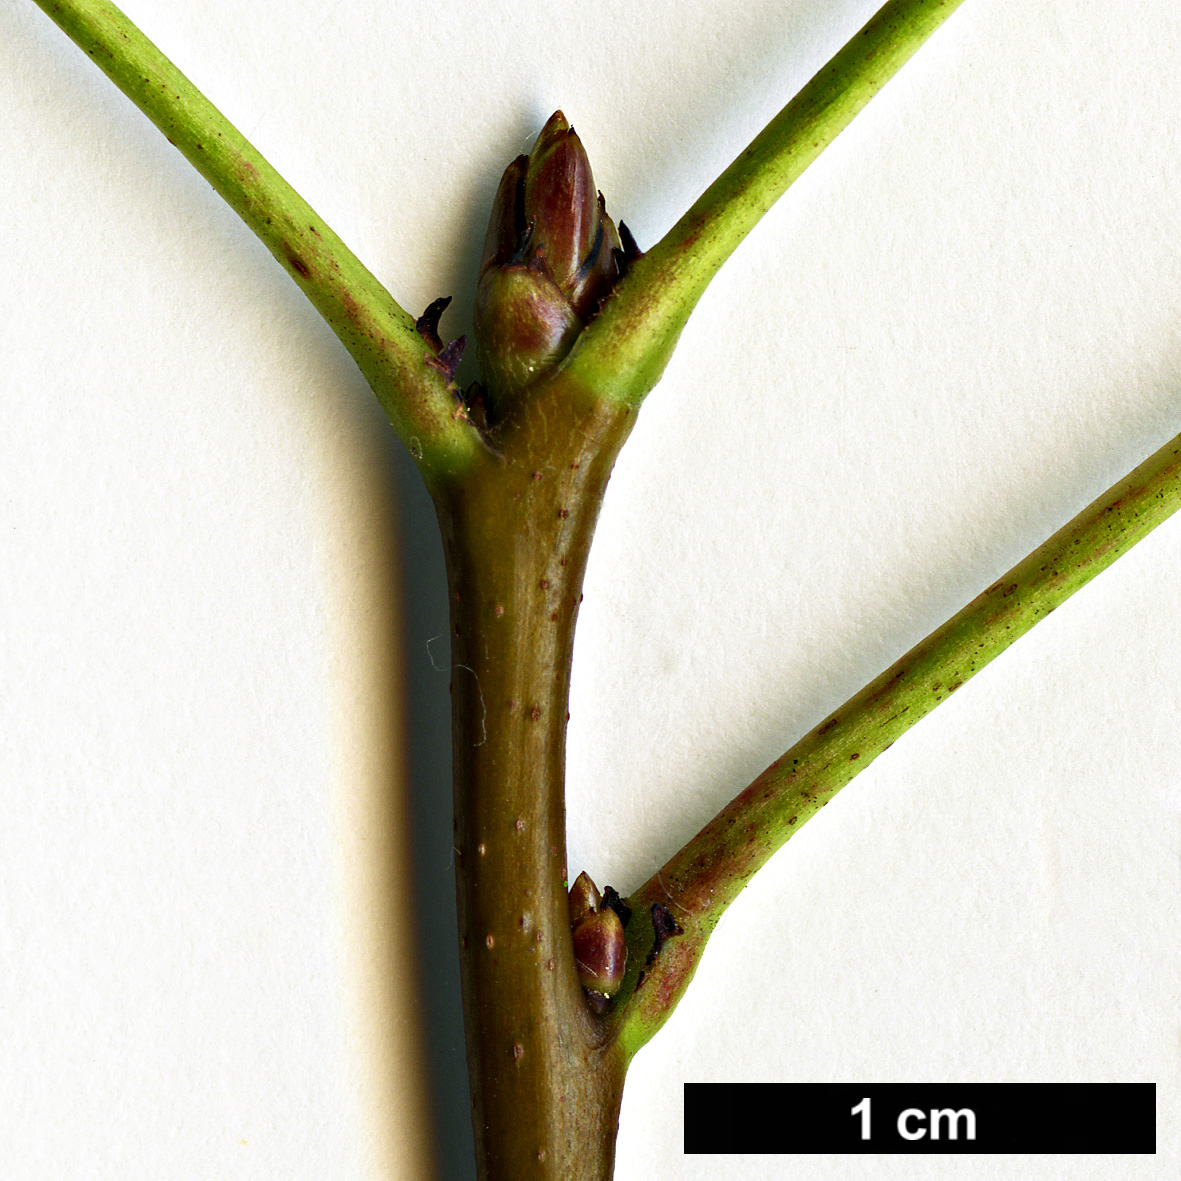 High resolution image: Family: Altingiaceae - Genus: Liquidambar - Taxon: orientalis